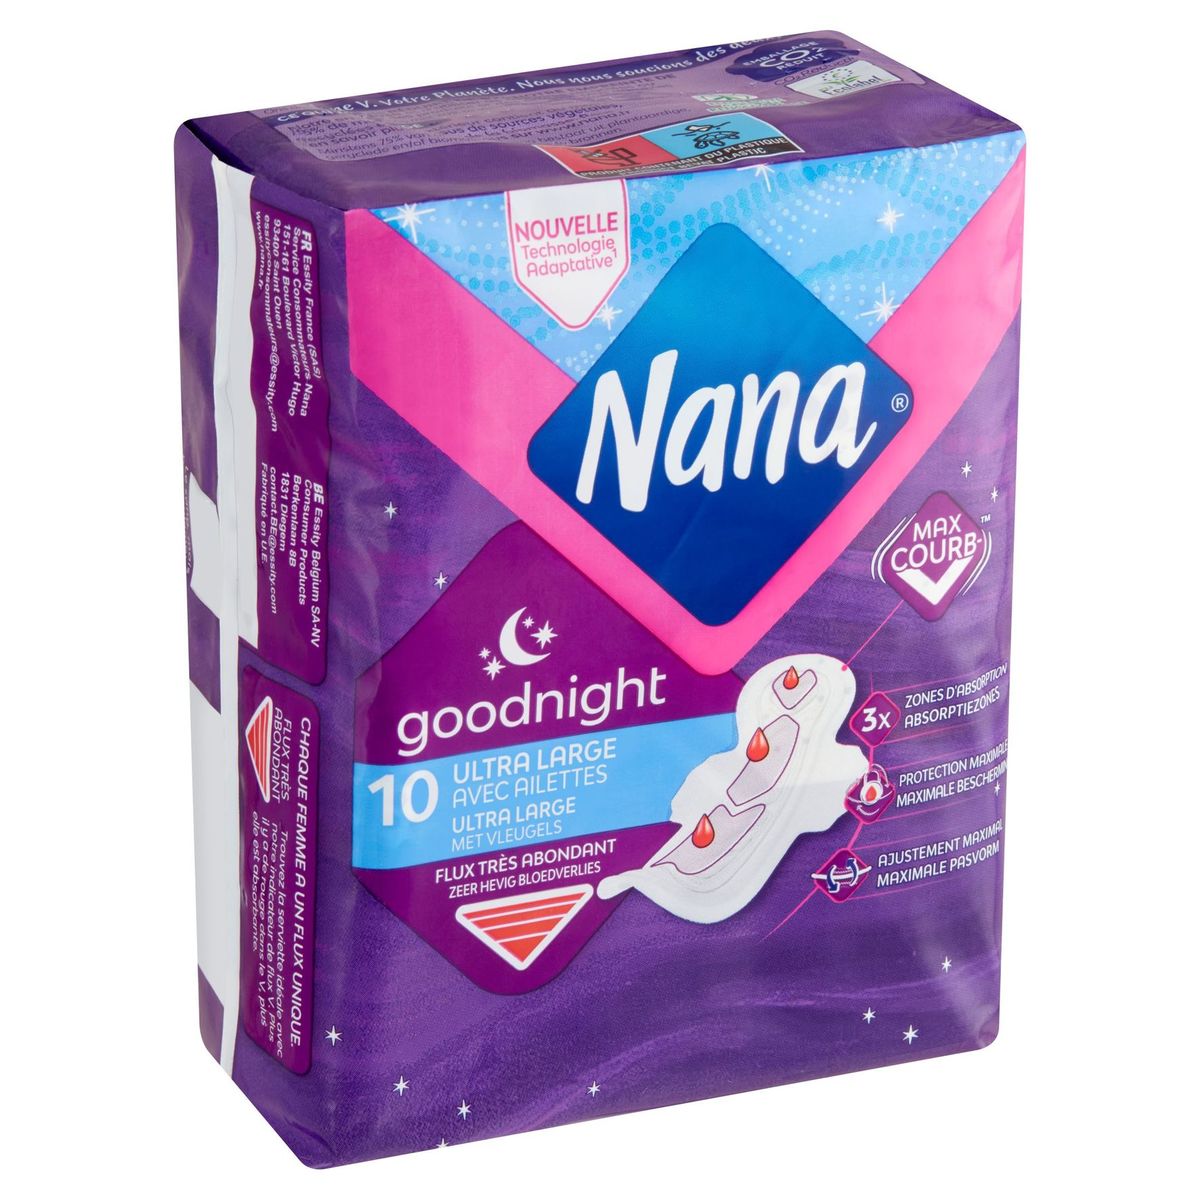 Nana Goodnight Ultra Large Serviette Hygiénique Flux Très Abondant 10x